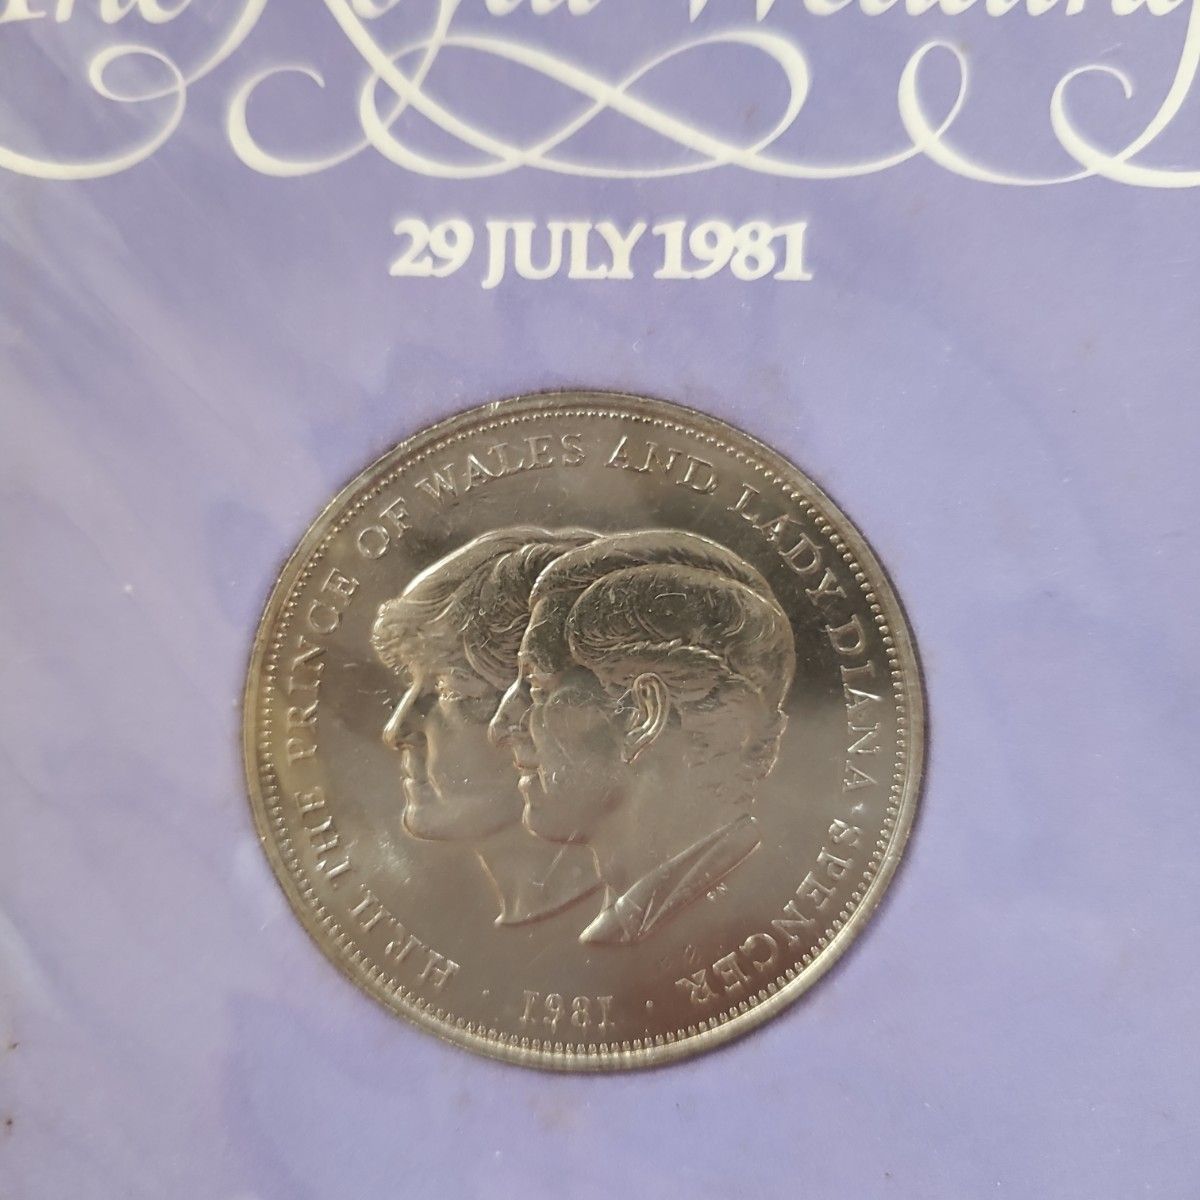 チャールズ皇太子 ダイアナ王妃 結婚記念コイン  硬貨